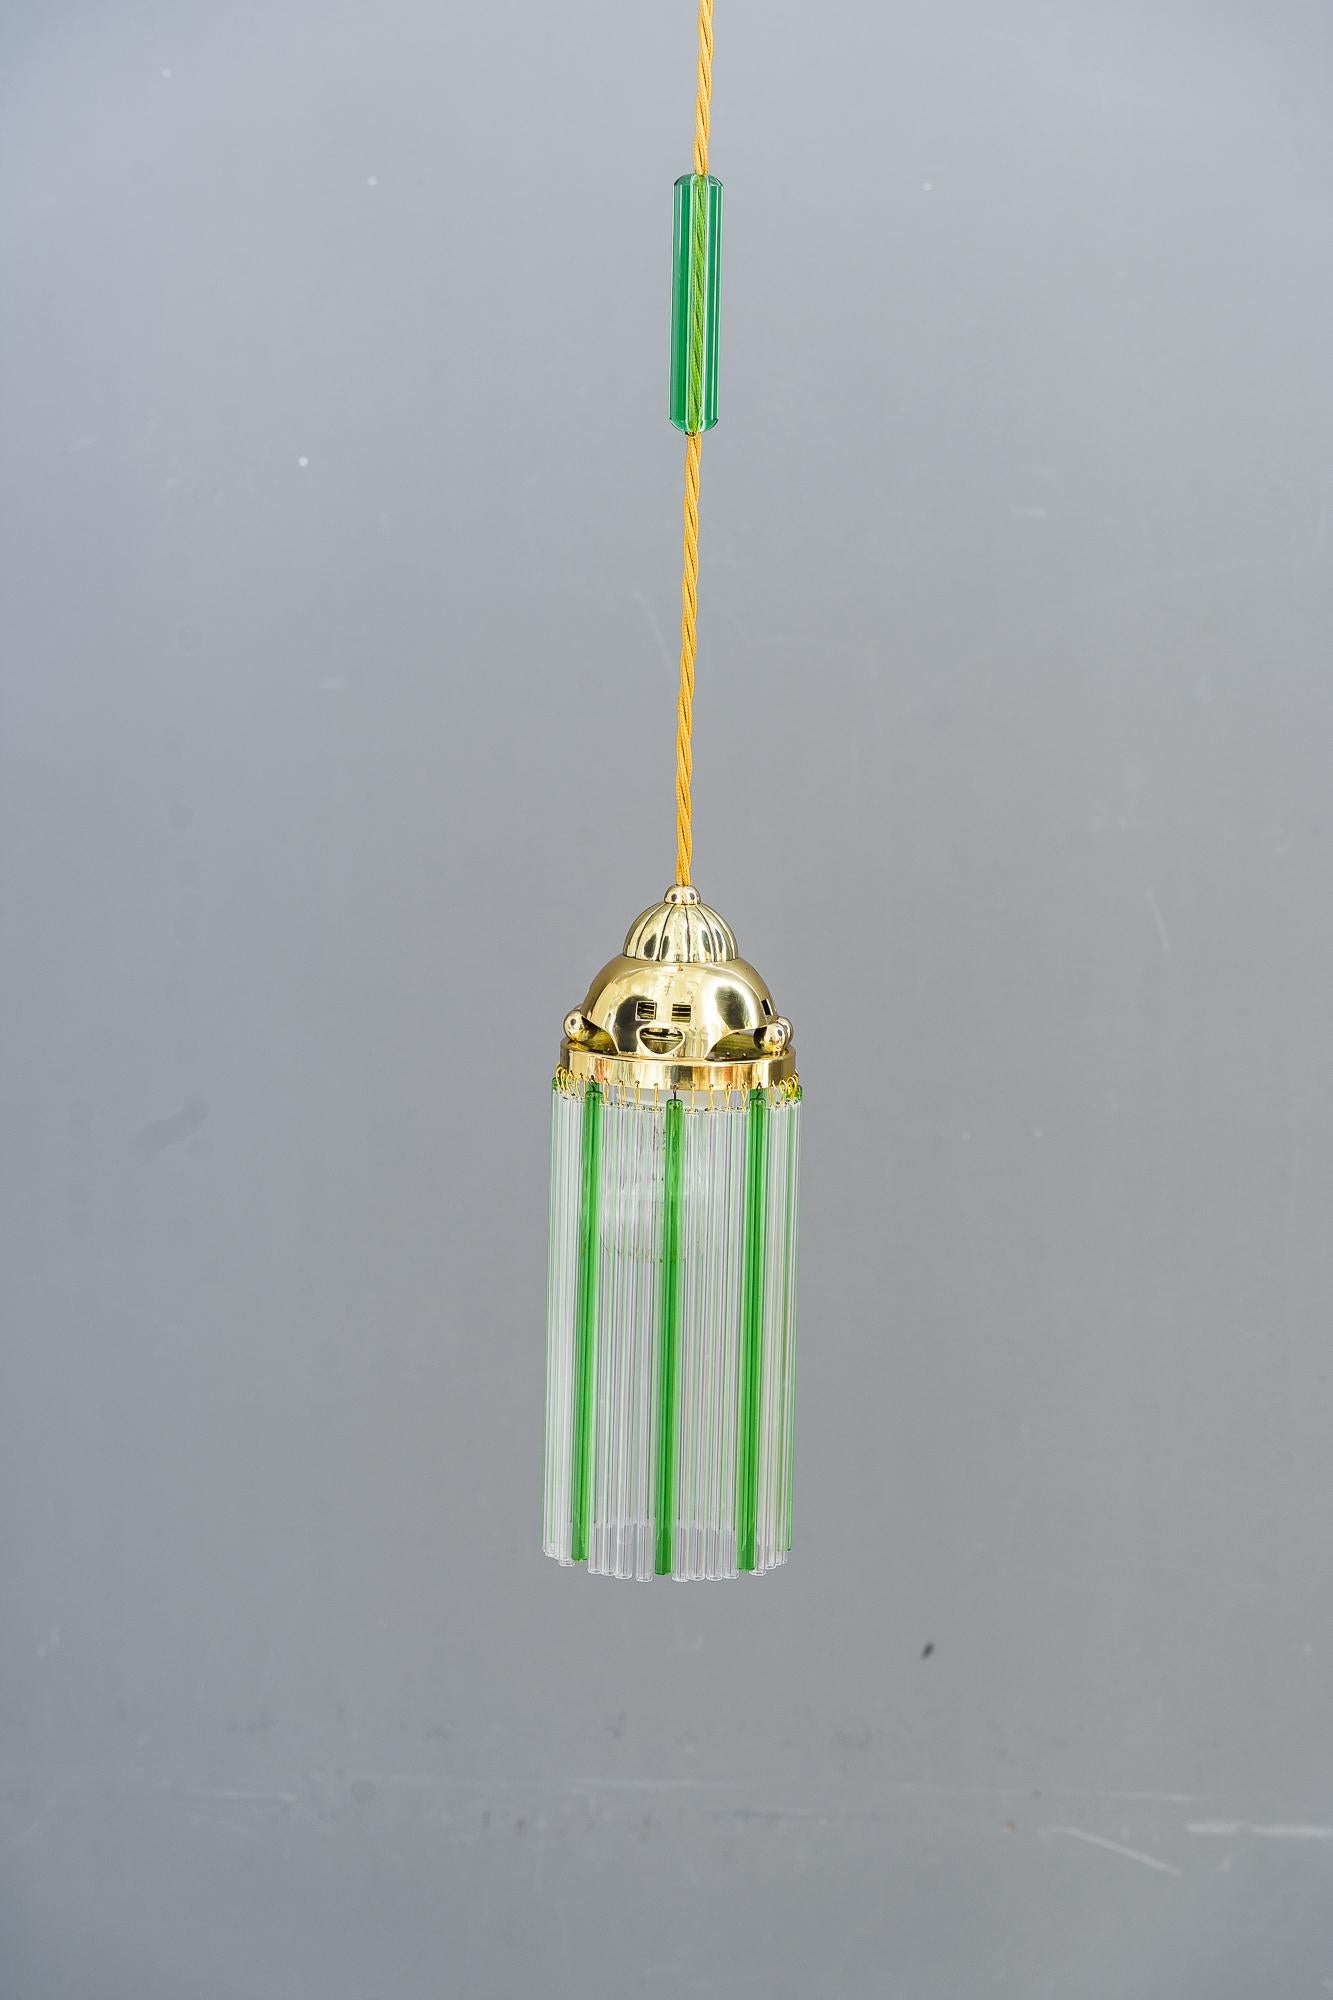 2 pendentifs Art Déco vienne vers 1920
Le verre vert est d'origine. 
Les bâtonnets transparents en verre blanc sont remplacés (nouveaux)